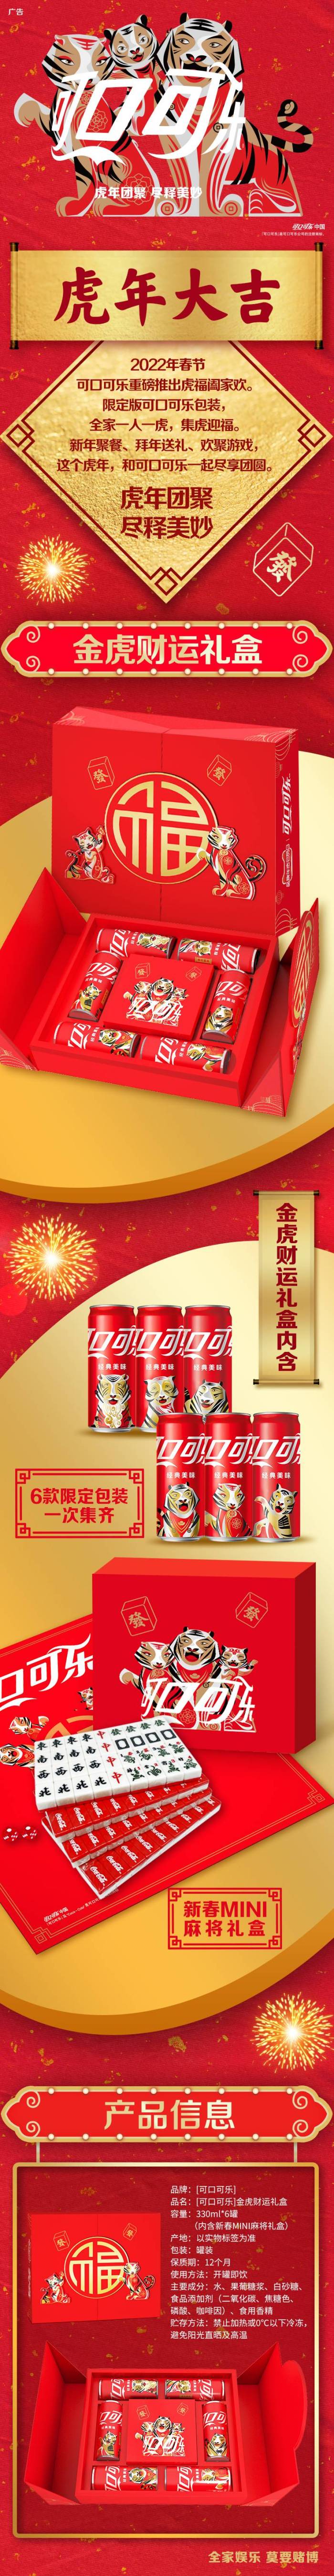 可口可乐推出金虎财运礼盒老虎全家福与你共享新春喜悦